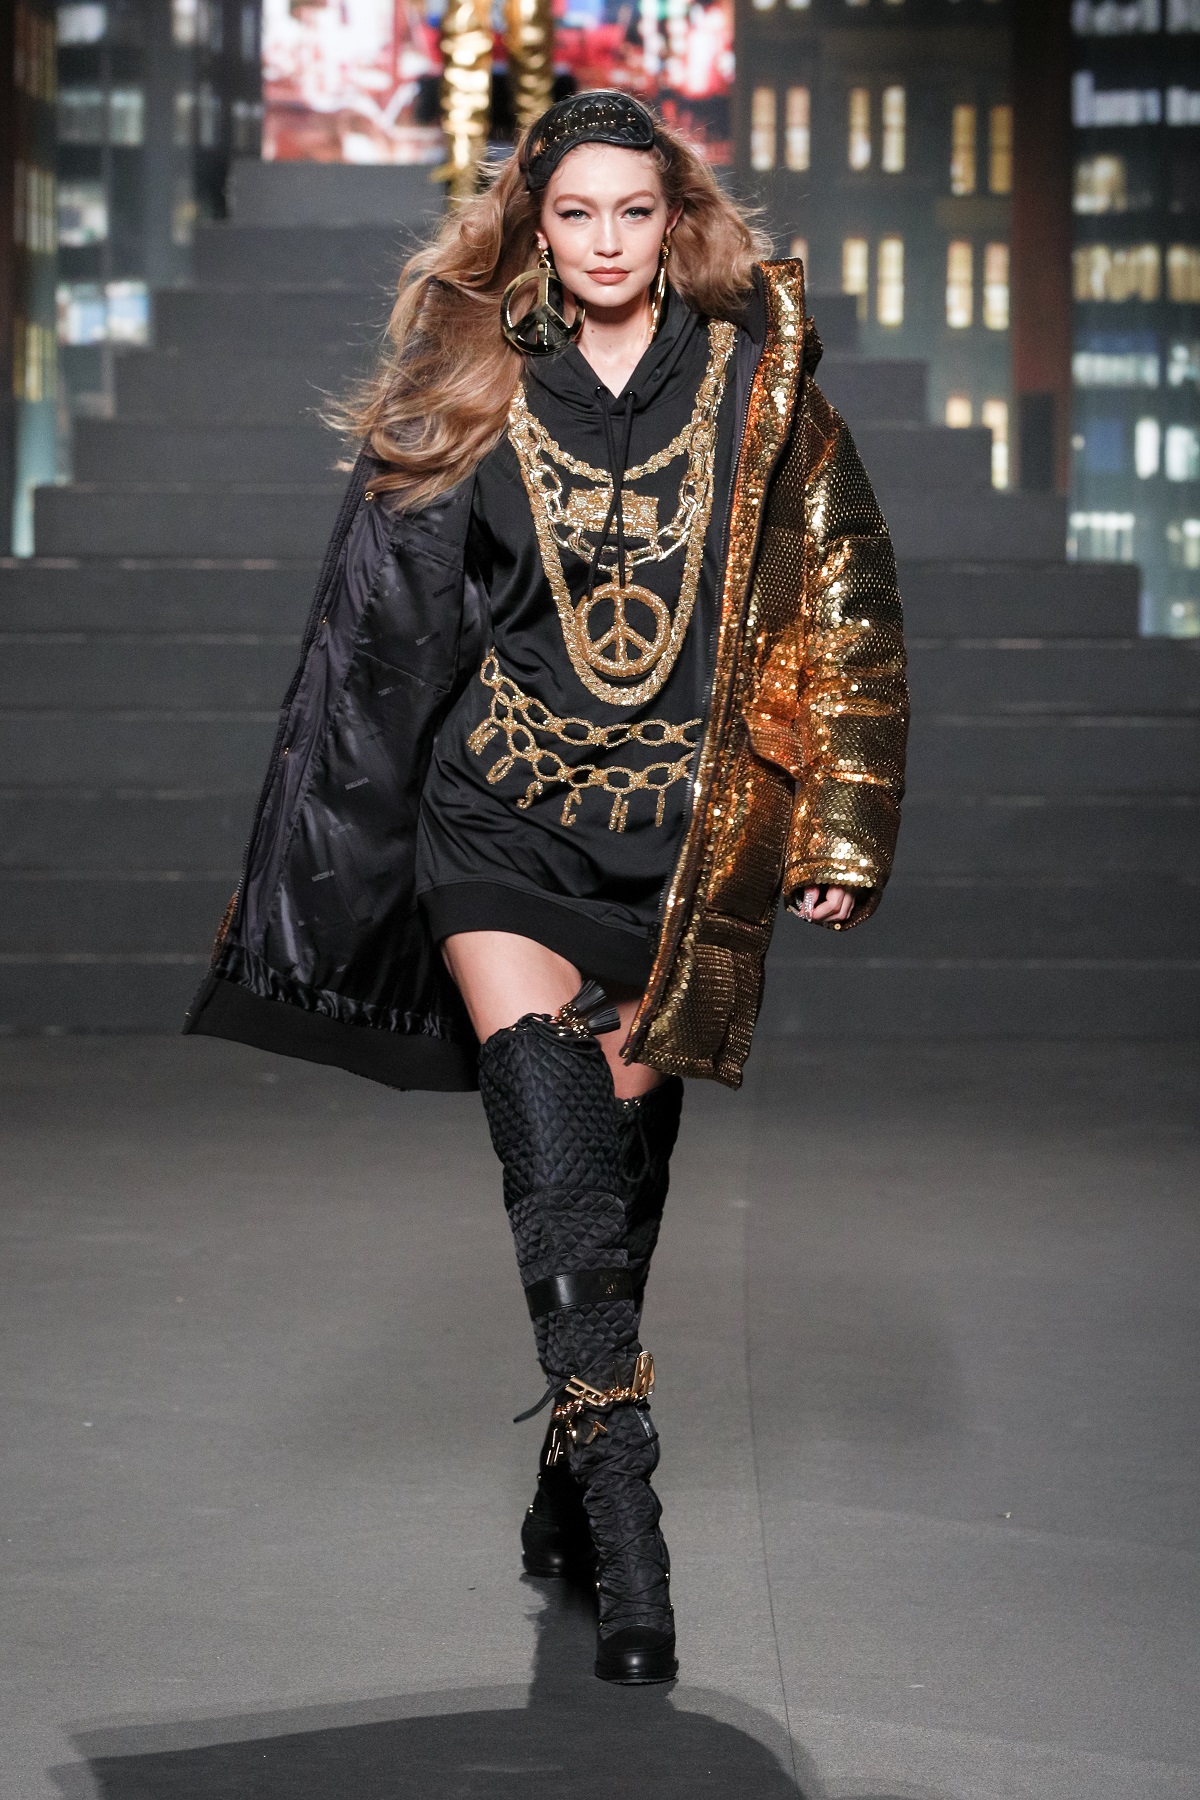 moschino hm event 1 Gigi Hadid 1 MOSCHINO [tv] H&M modna revija: Poznate ličnosti, supermodeli i iznenađenja